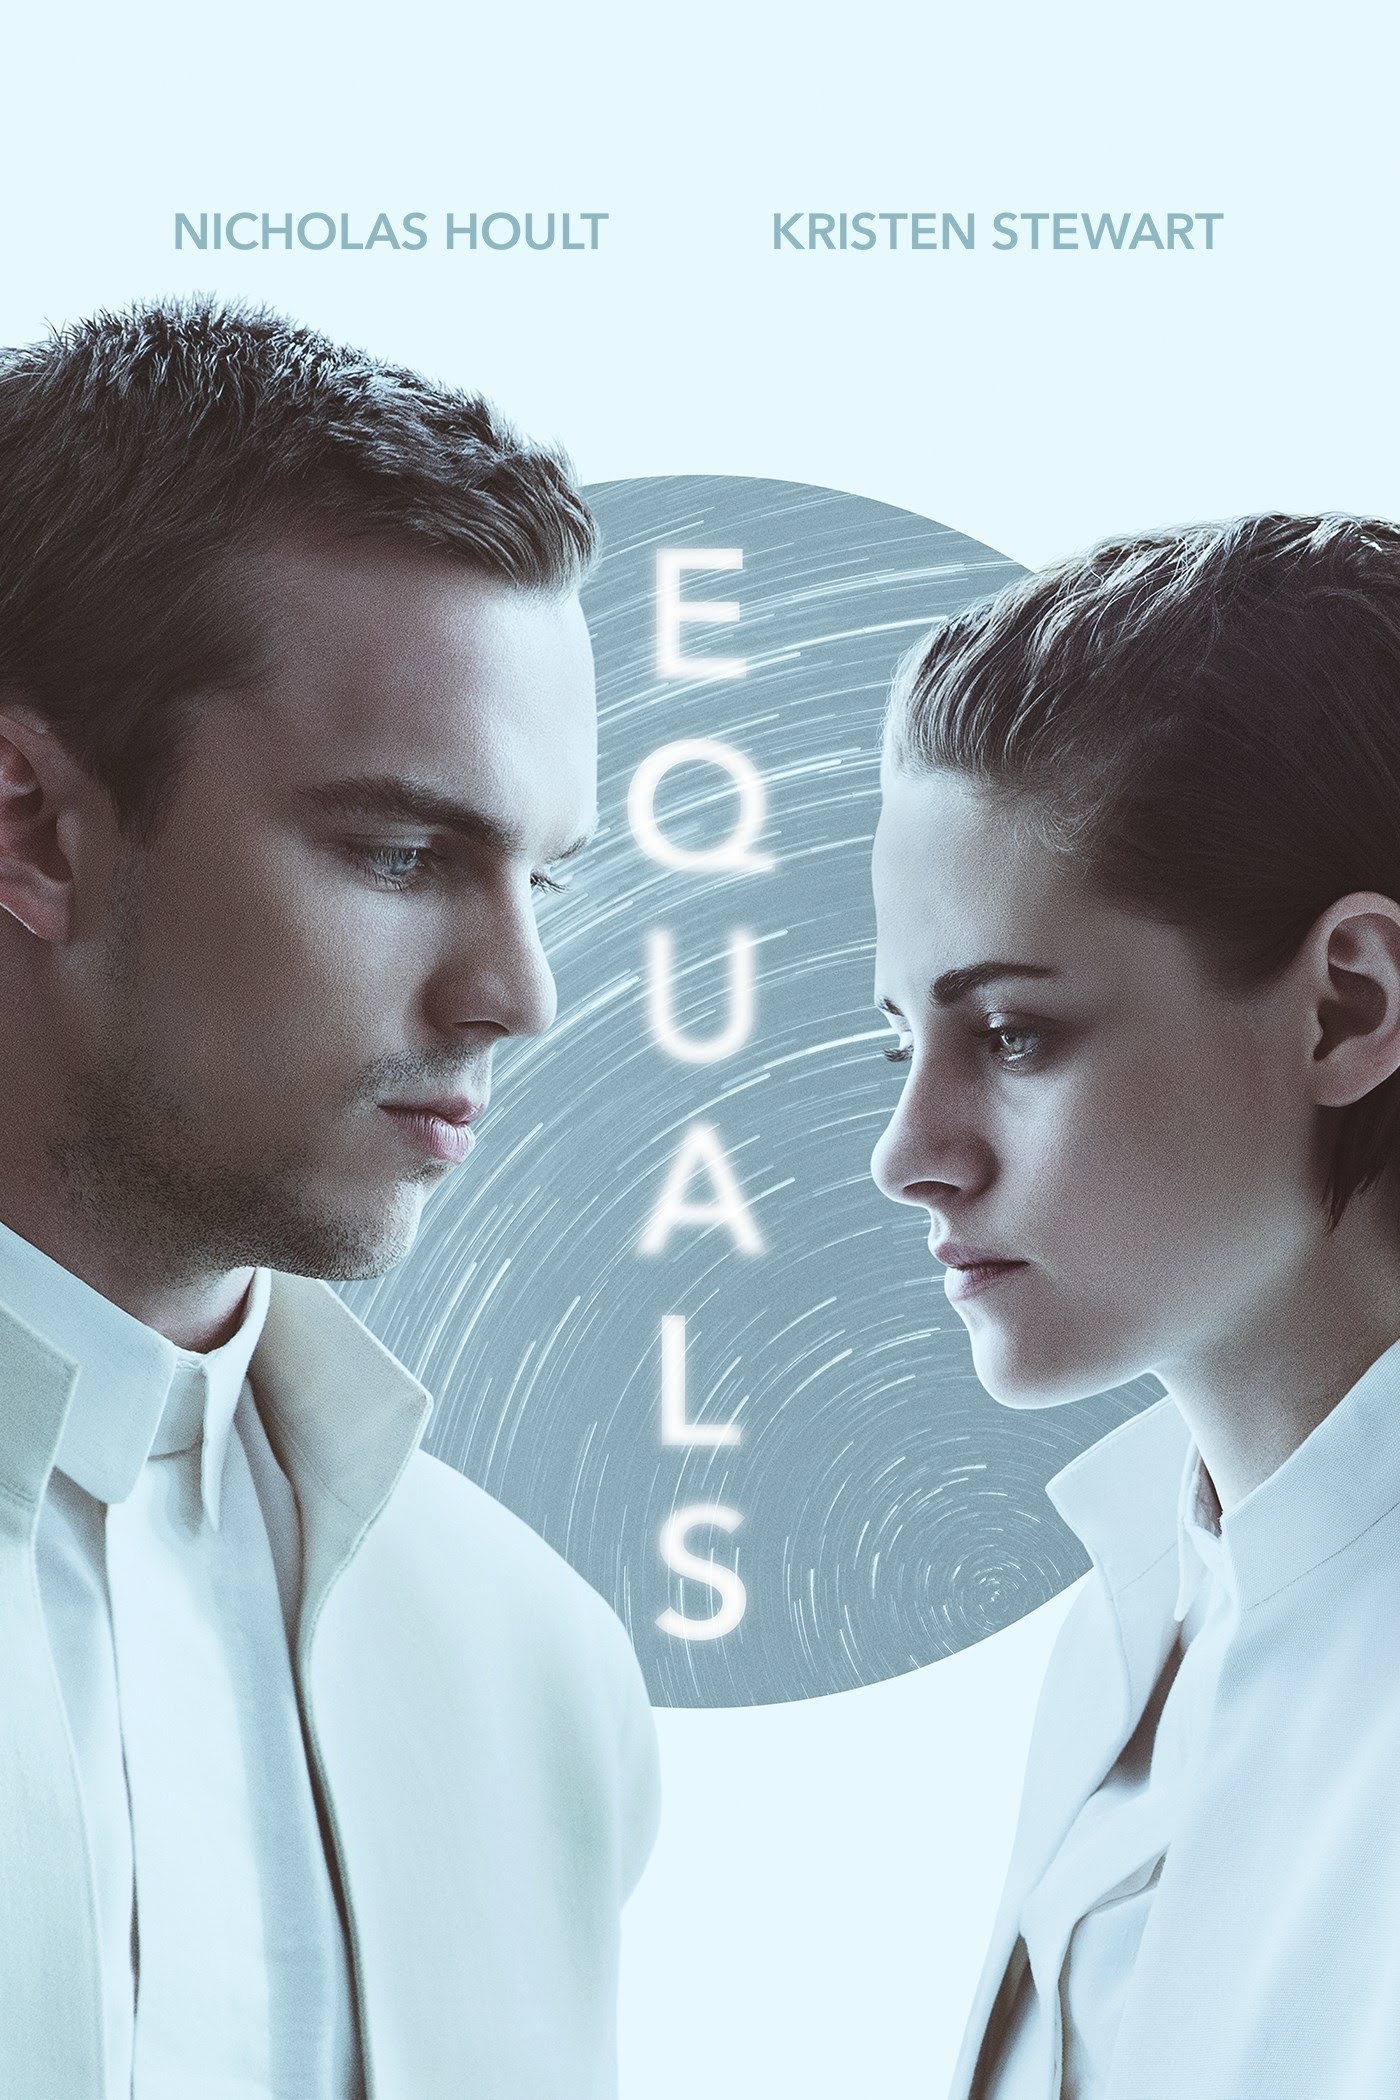 Equals [HD] (2016)